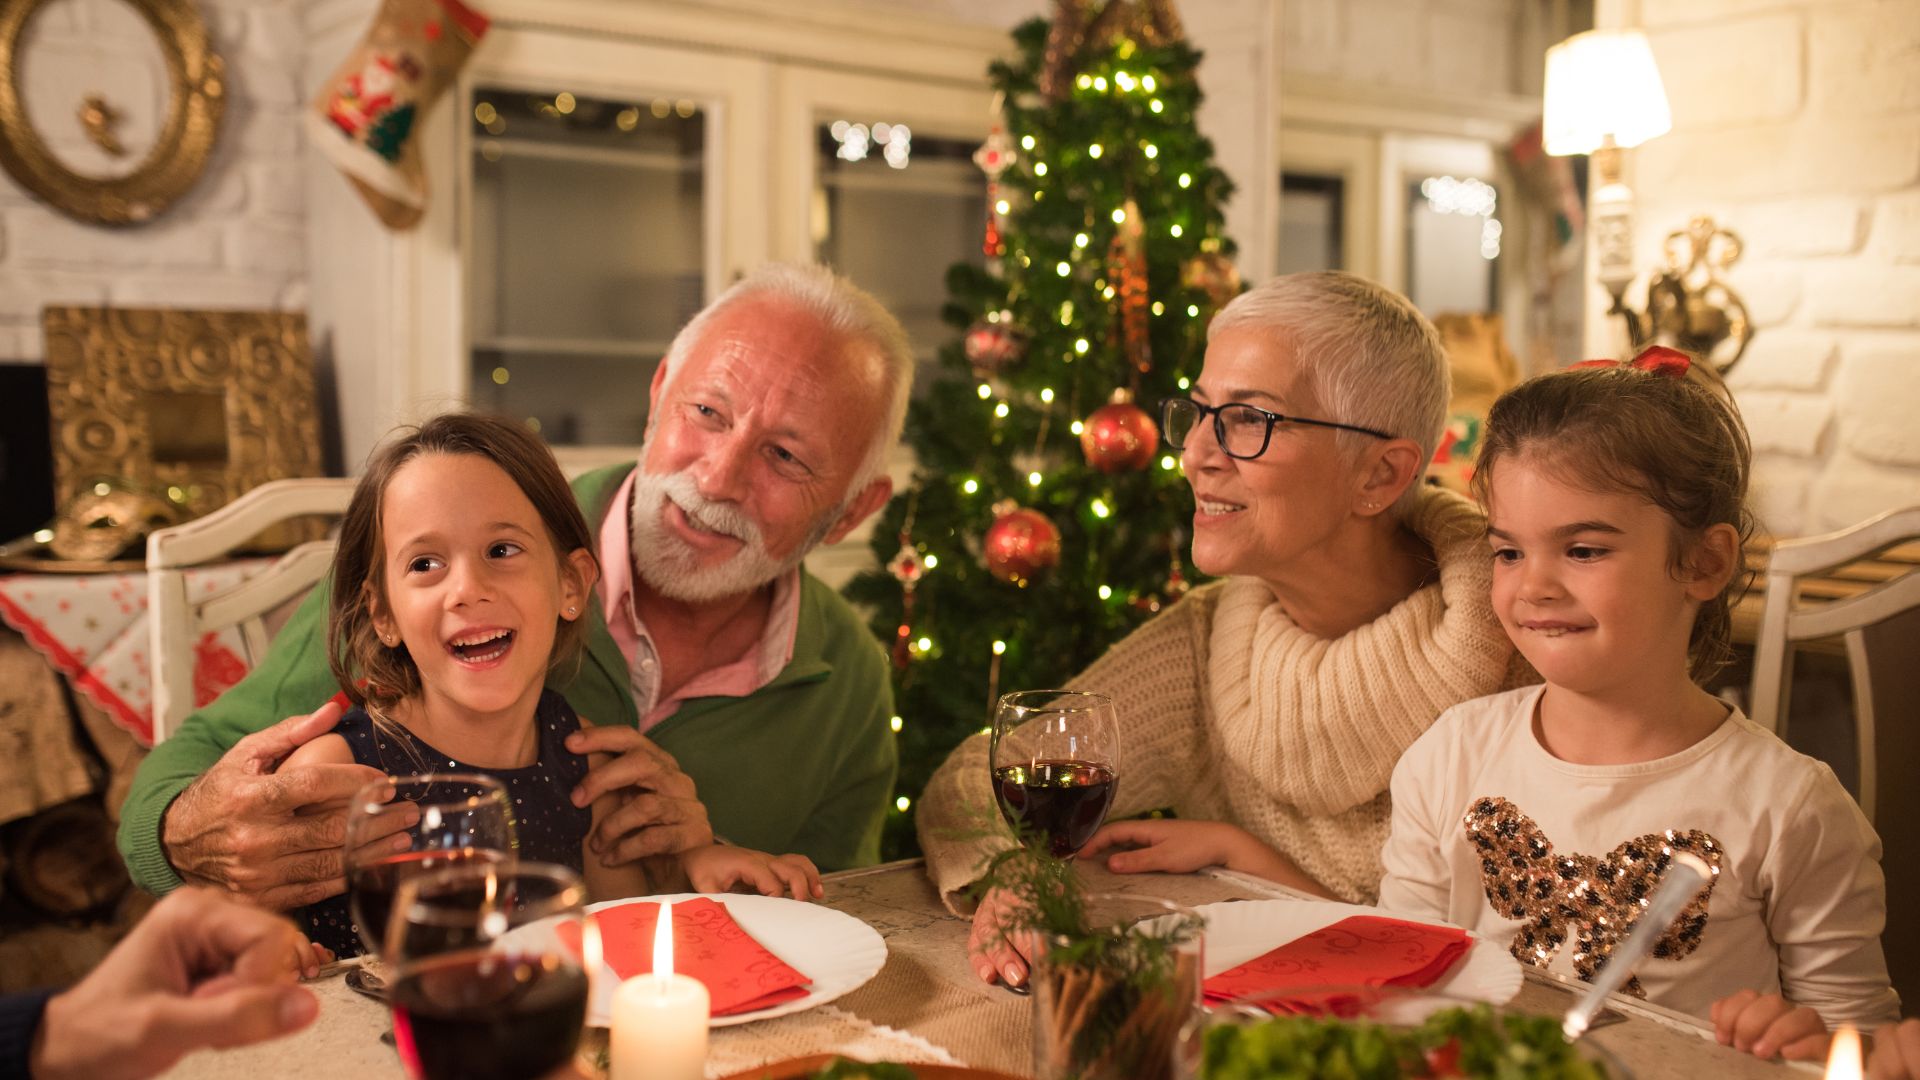 Imagem de um casal de idosos, acompanhados de suas netinhas. Todos estão sentados à uma mesa decorada com enfeites natalinos. Ao fundo, uma linda árvore de Natal.